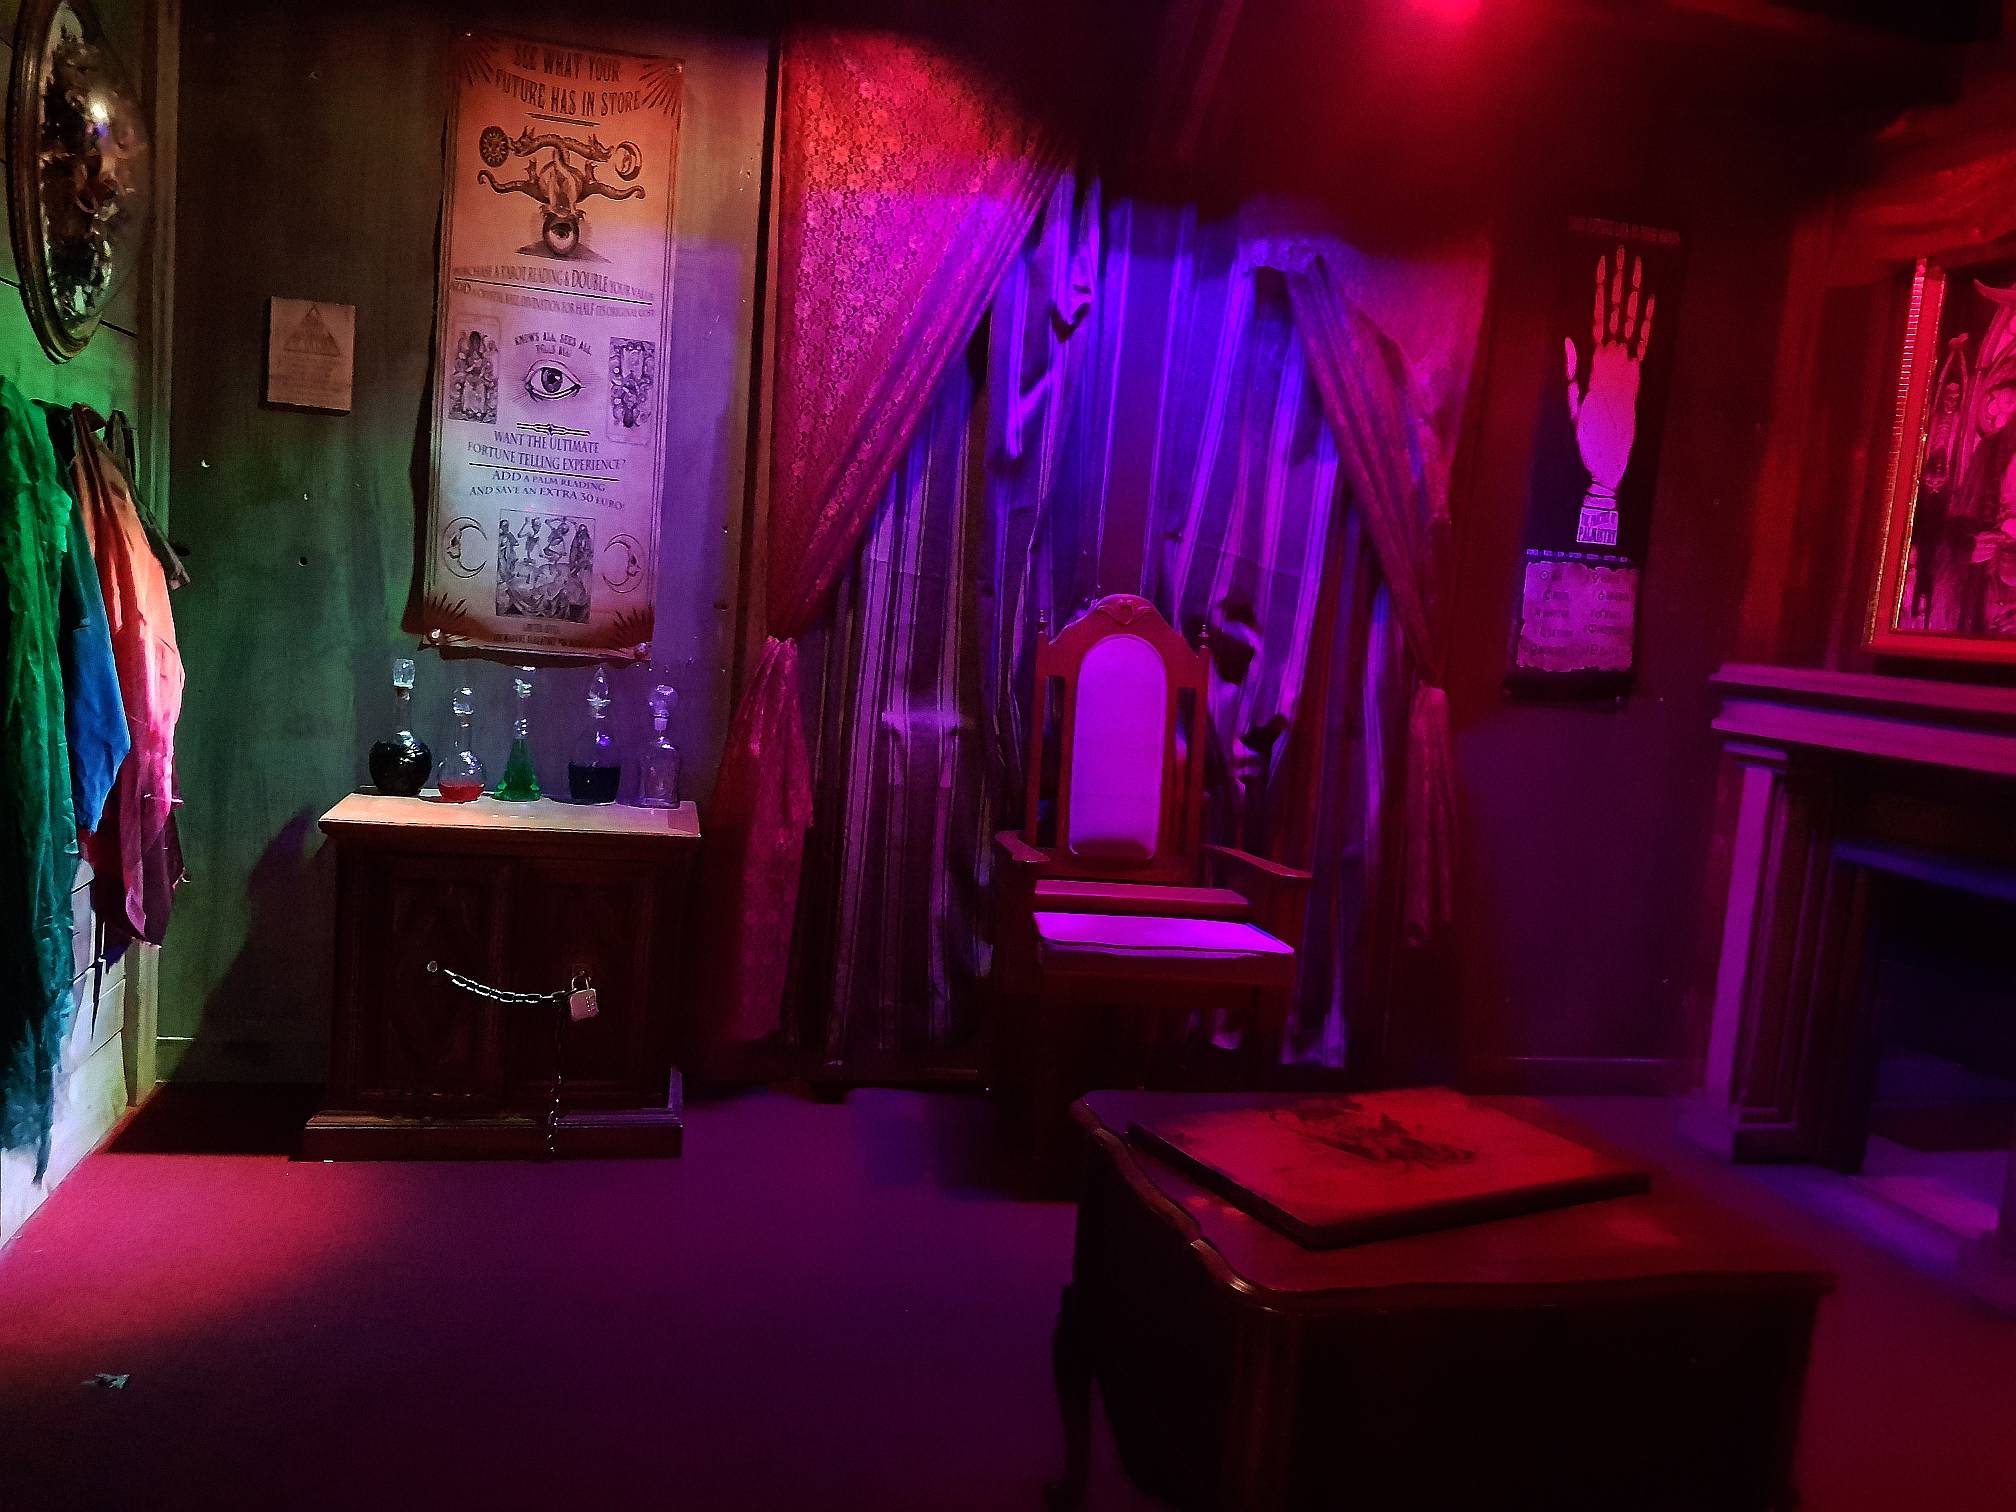 Horror Escape, Immersive & Thrilling Escape Room